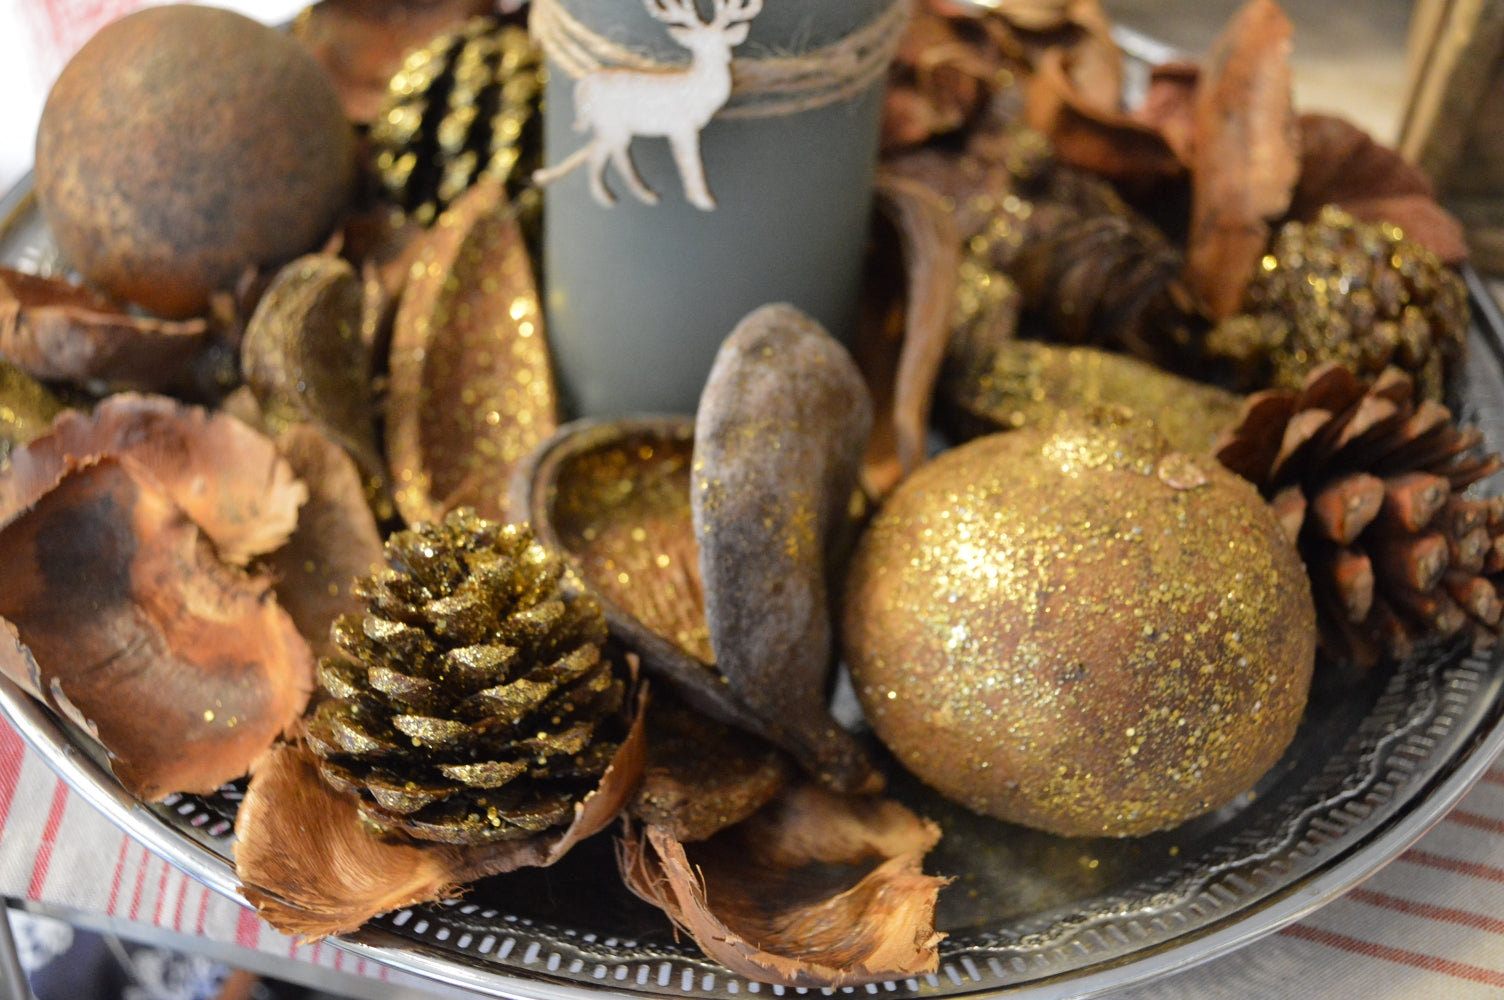 Dekorera din julhem eller adventsarrangemang med fina juliga grejer från denna påse.  Påsen innehåller kottar, torkade frukt, nötskål m.m.